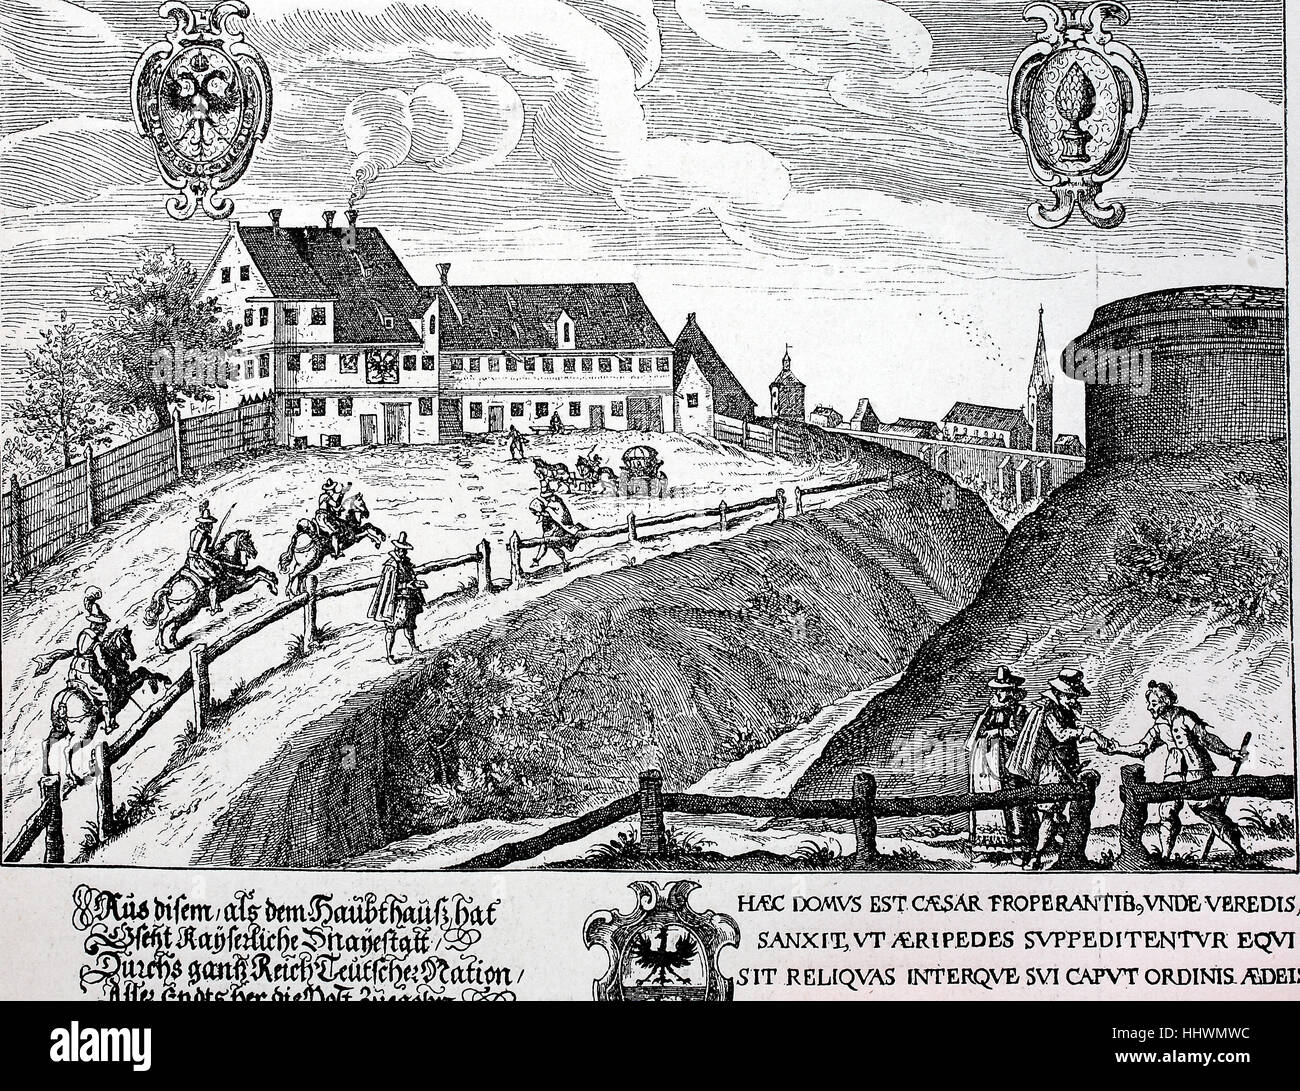 Die Poststation in Augsburg im Jahre 1616, Kupfer Kupferstich von Lucas Kilian, Deutschland, historisches Bild oder Illustration, veröffentlicht 1890, digital verbessert Stockfoto